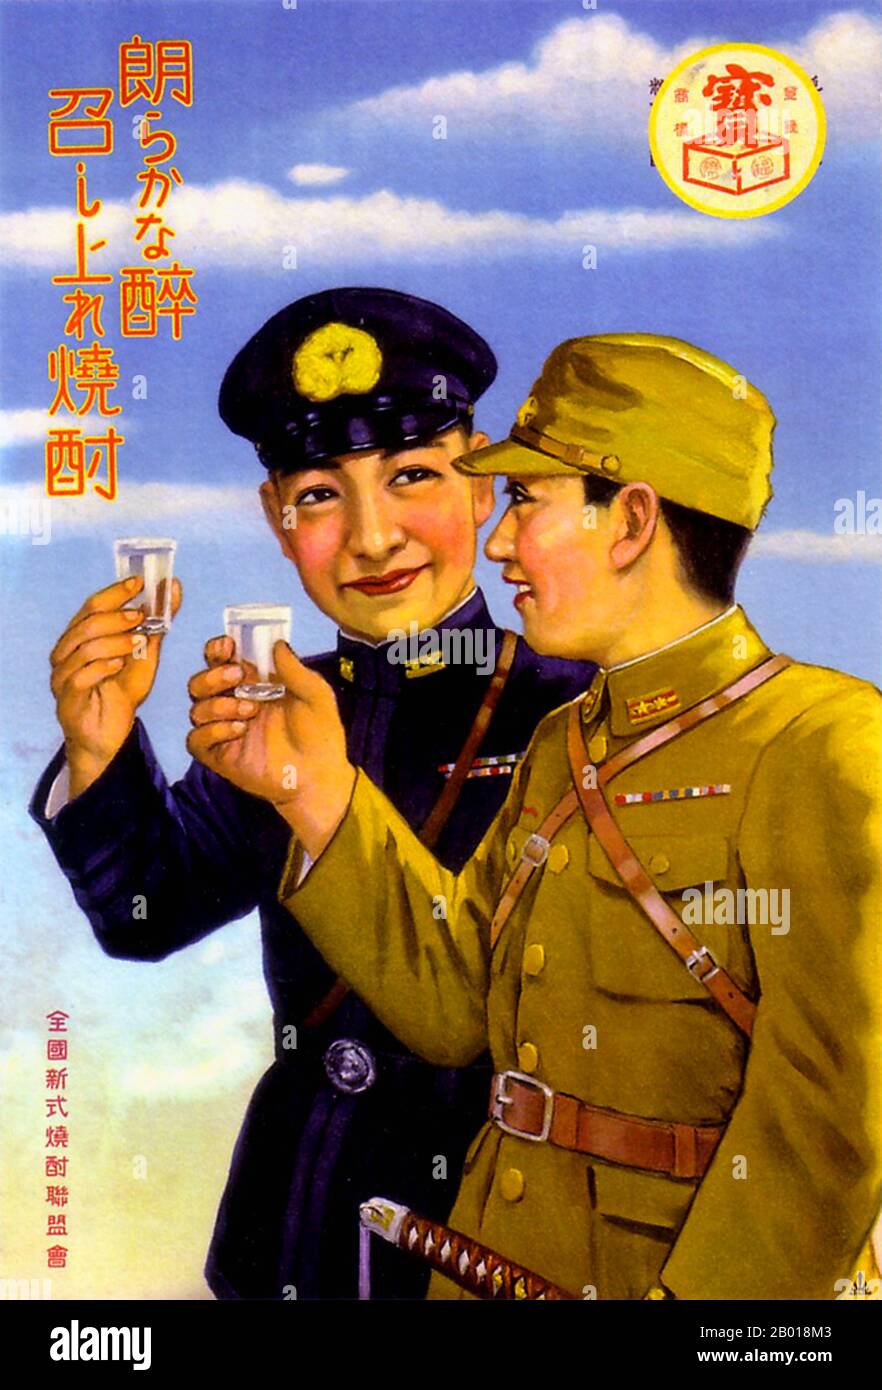 Japan: Werbeplakat für Takara Shochu, c. 1935-1938. Zwei Militäroffiziere - Armee und Marine stoßen sich mit einer Brille Takara Shochu an. Shochu ist ein mittelstarker japanischer Likör, der in der Regel zu 25 Prozent Alkohol ist, stärker als Bier oder Sake, aber nicht so stark wie Whisky oder Wodka. Stockfoto